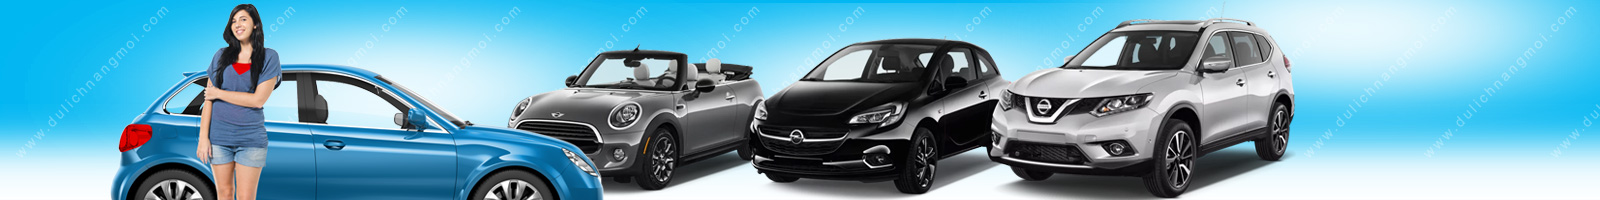 Cho thuê xe tự lái 4-16 chỗ giá rẻ TPHCM - Thủ tục đơn giản